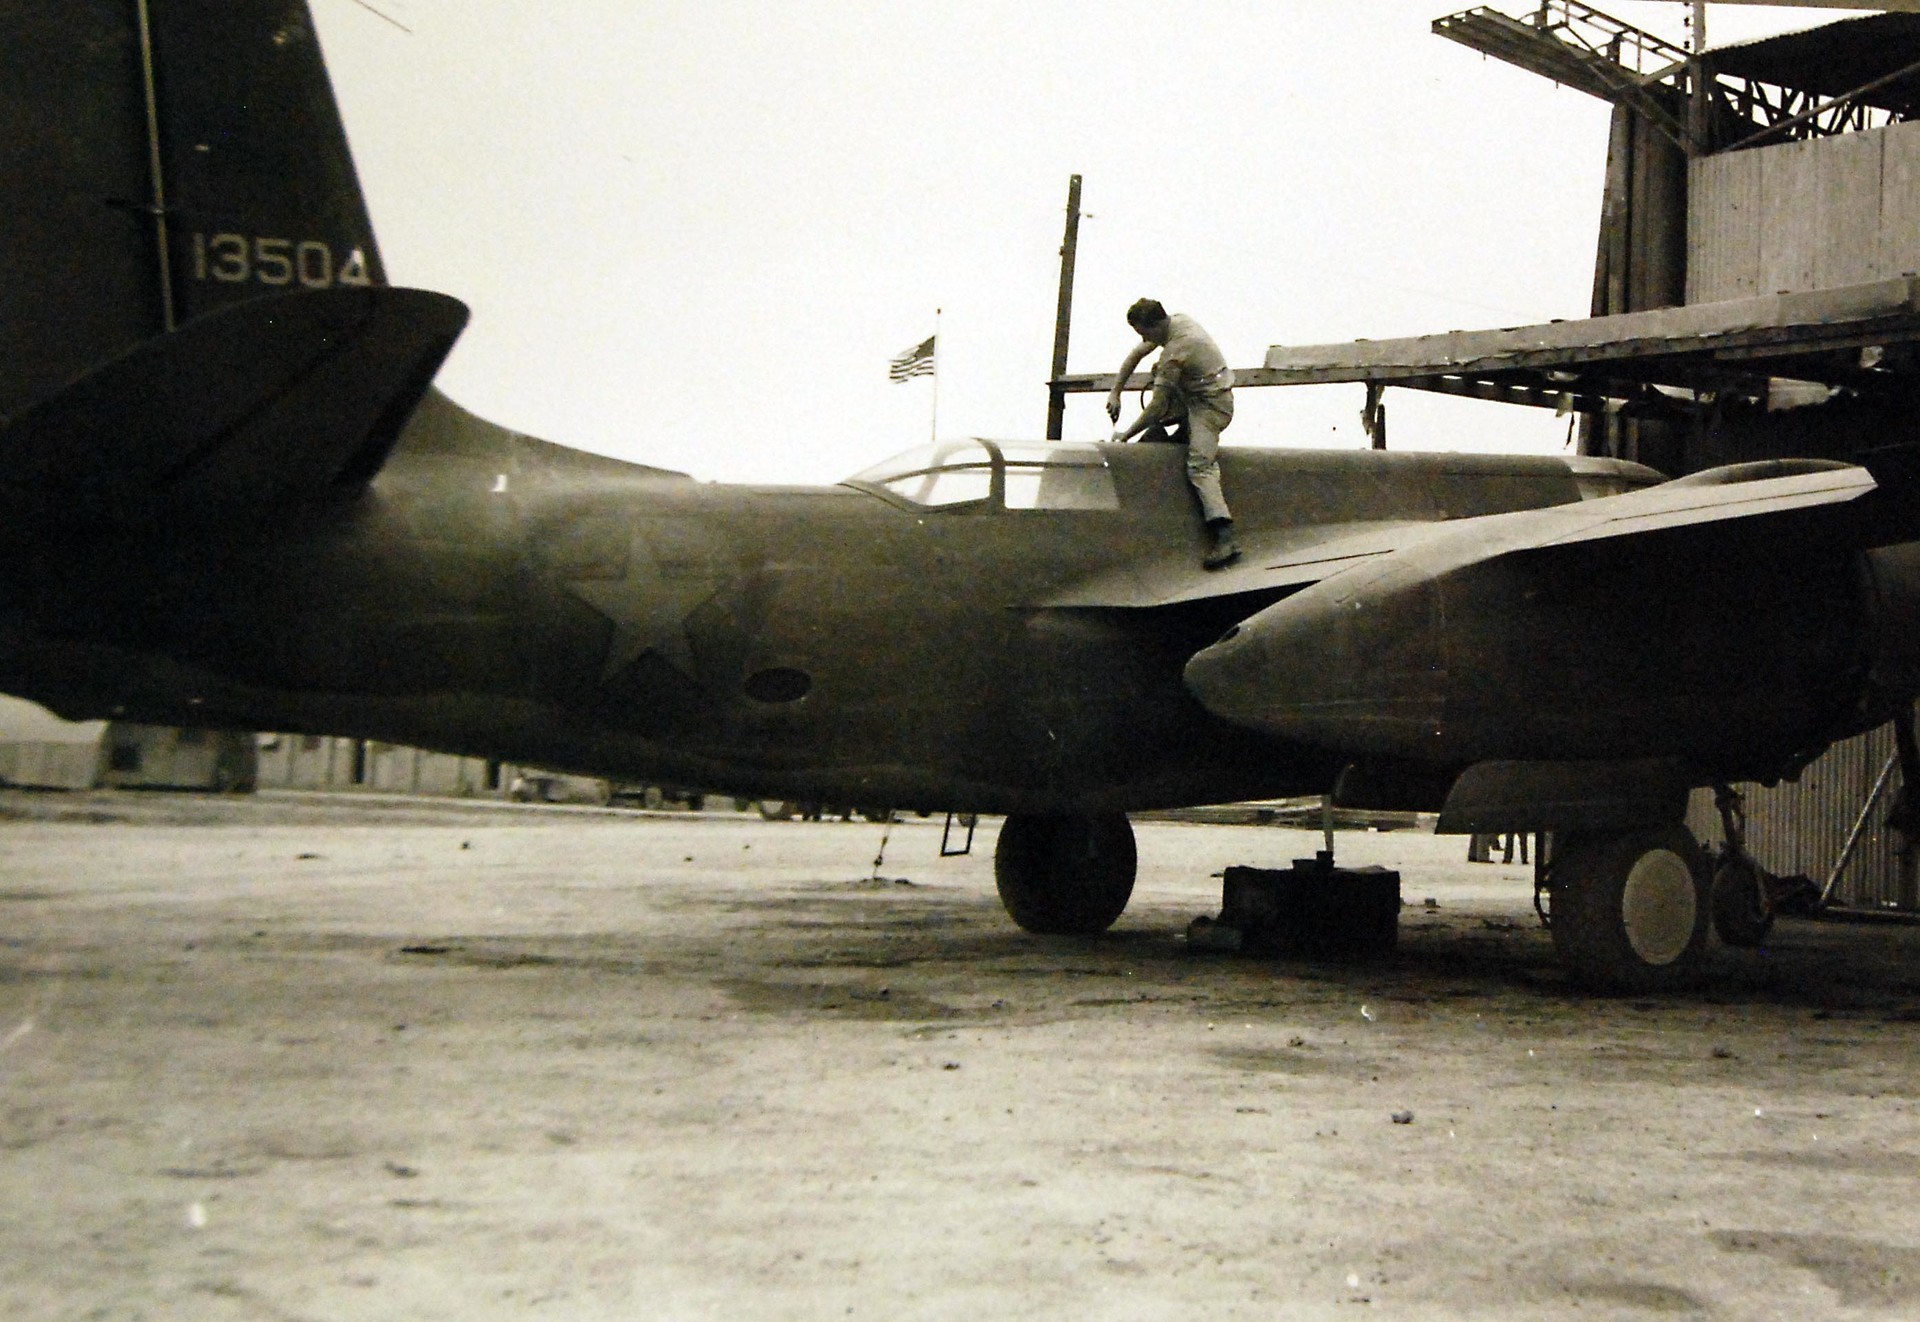 Mecânico norte-americano dando os últimos retoques em um avião de guerra antes de sua entrega à Rússia, em algum lugar do Irã, em março de 1943
